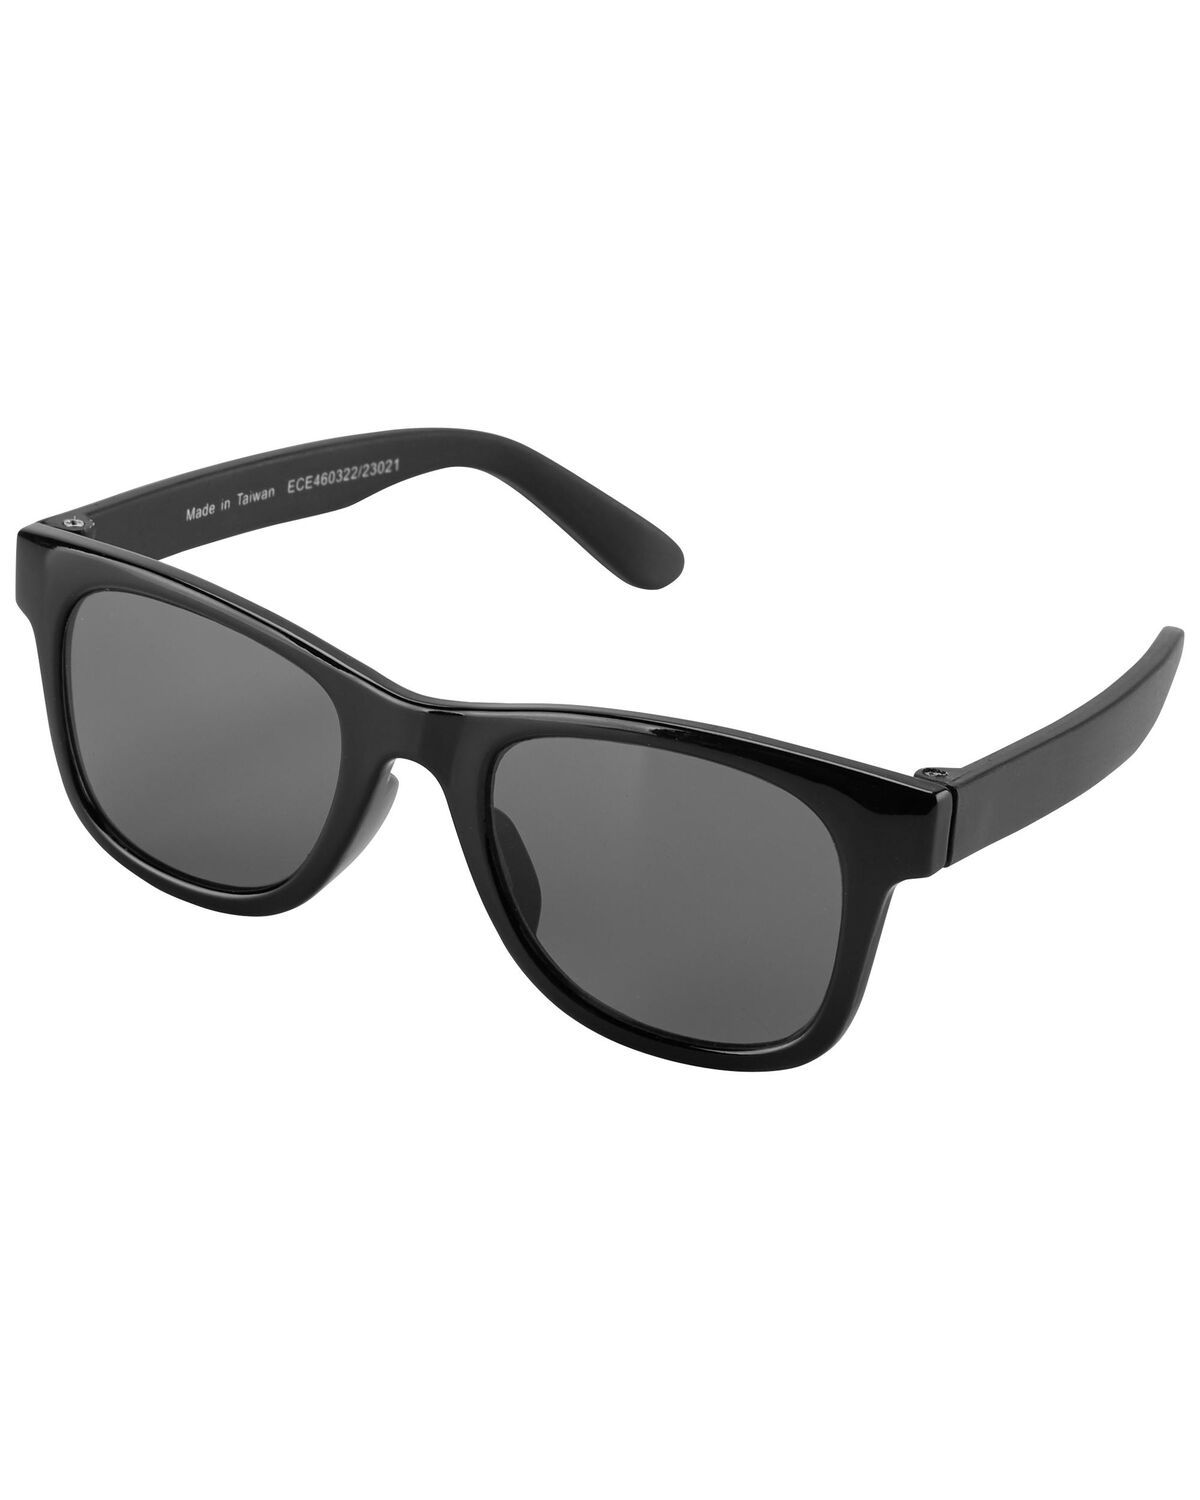 Black Baby Classic Sunglasses | carters.com | Carter's